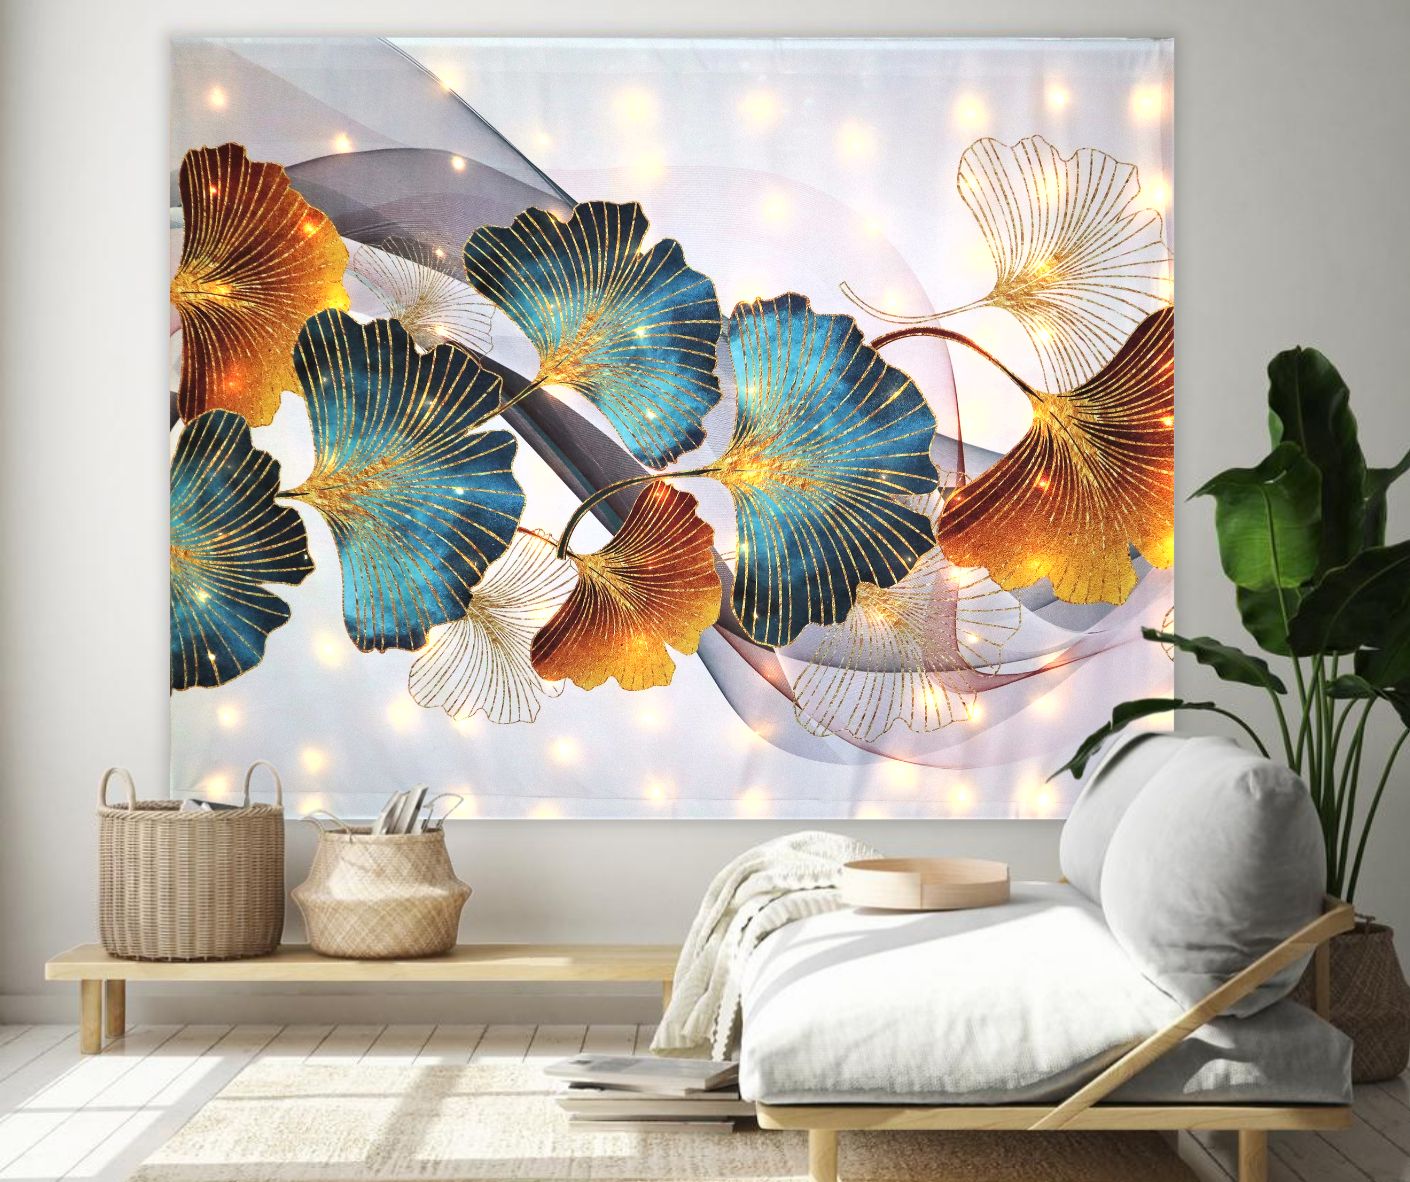 Tapiz LED KaiSha para colgar en la pared; Decoración de arte abstracto moderno Paisaje bohemio Floral